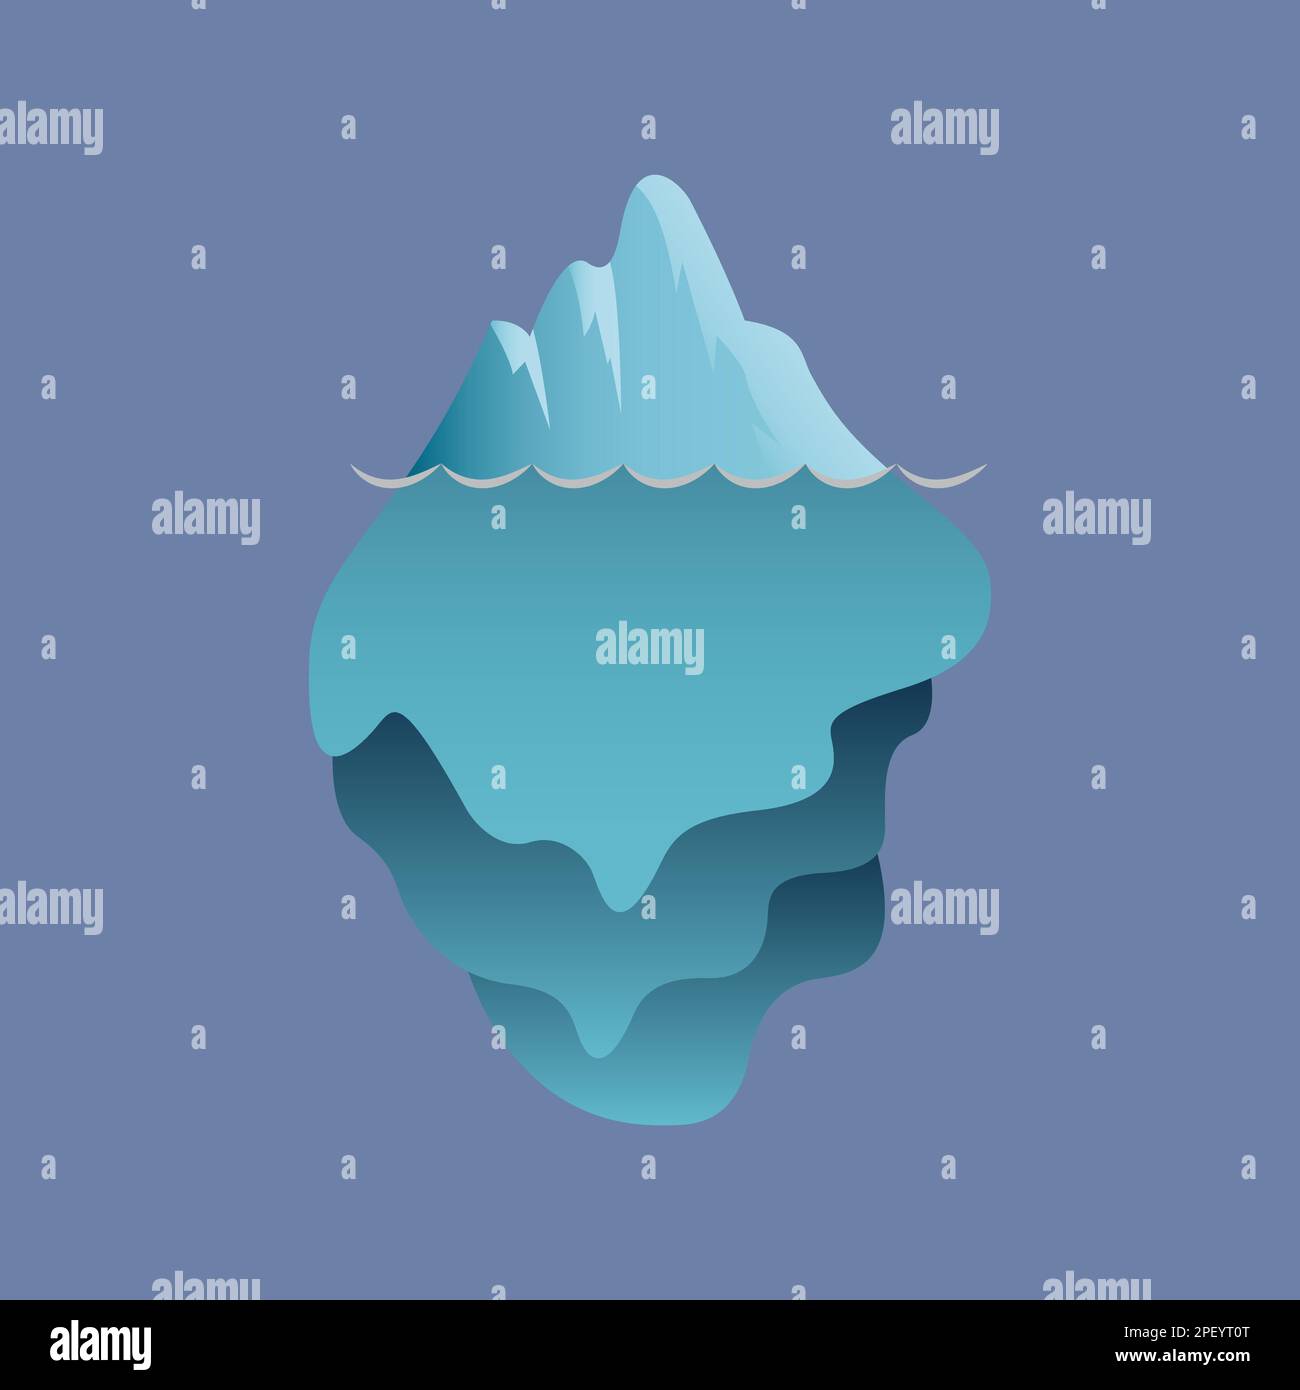 Iceberg flottant sur l'océan Illustration de Vecteur